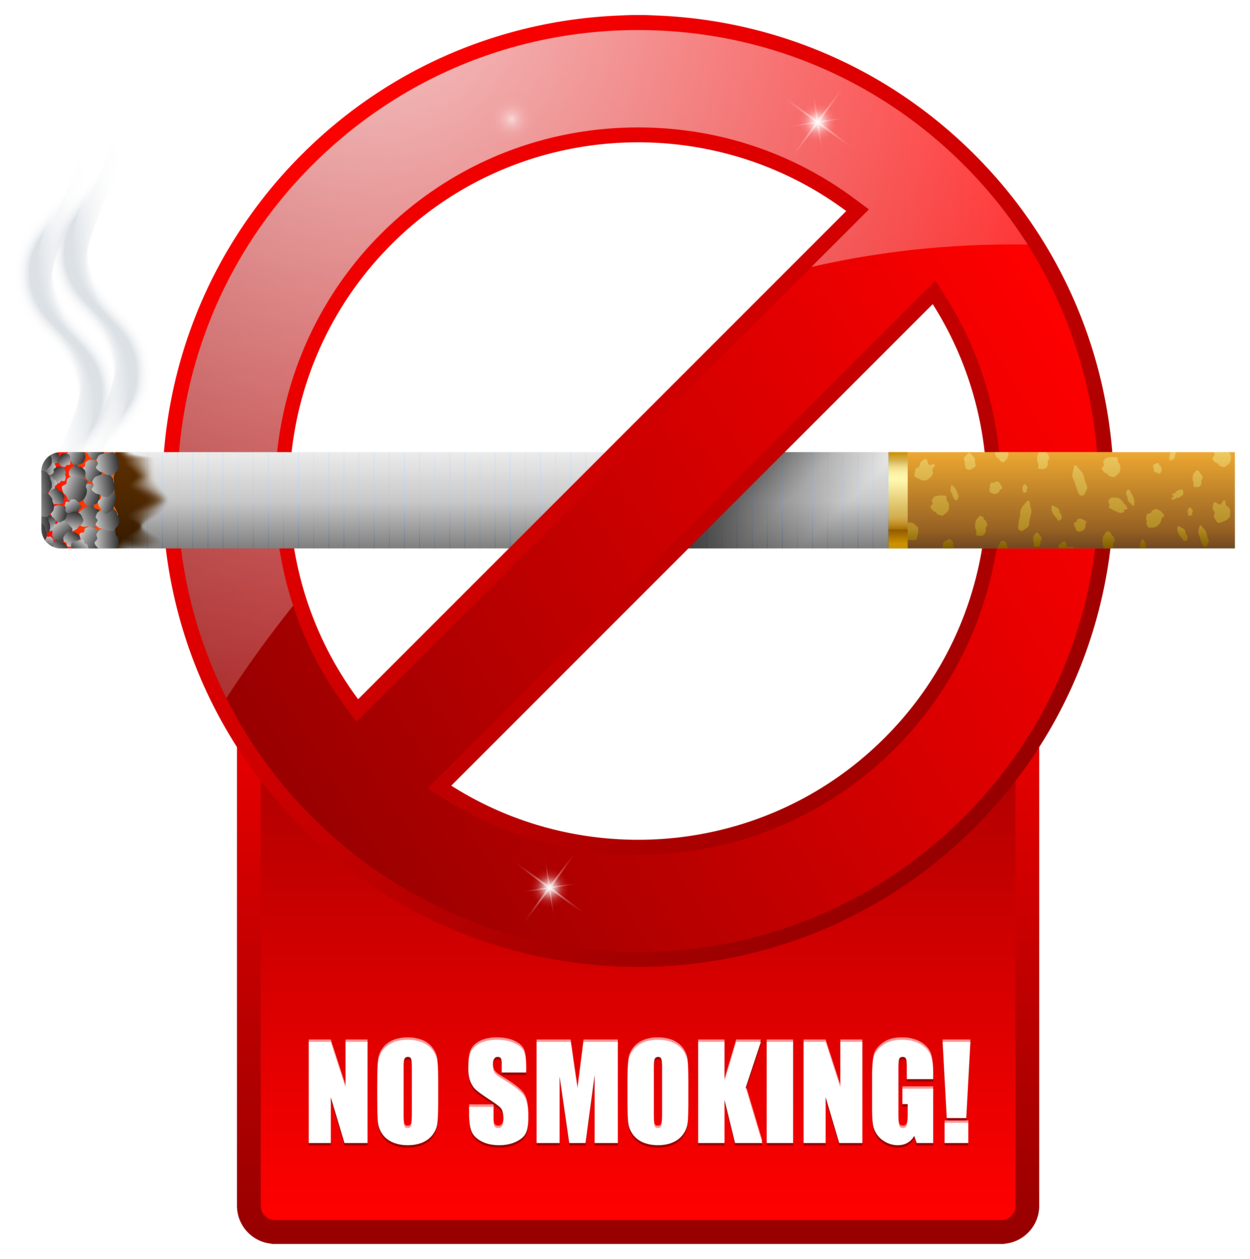 No Smoking Warning Sign PNG Clipart